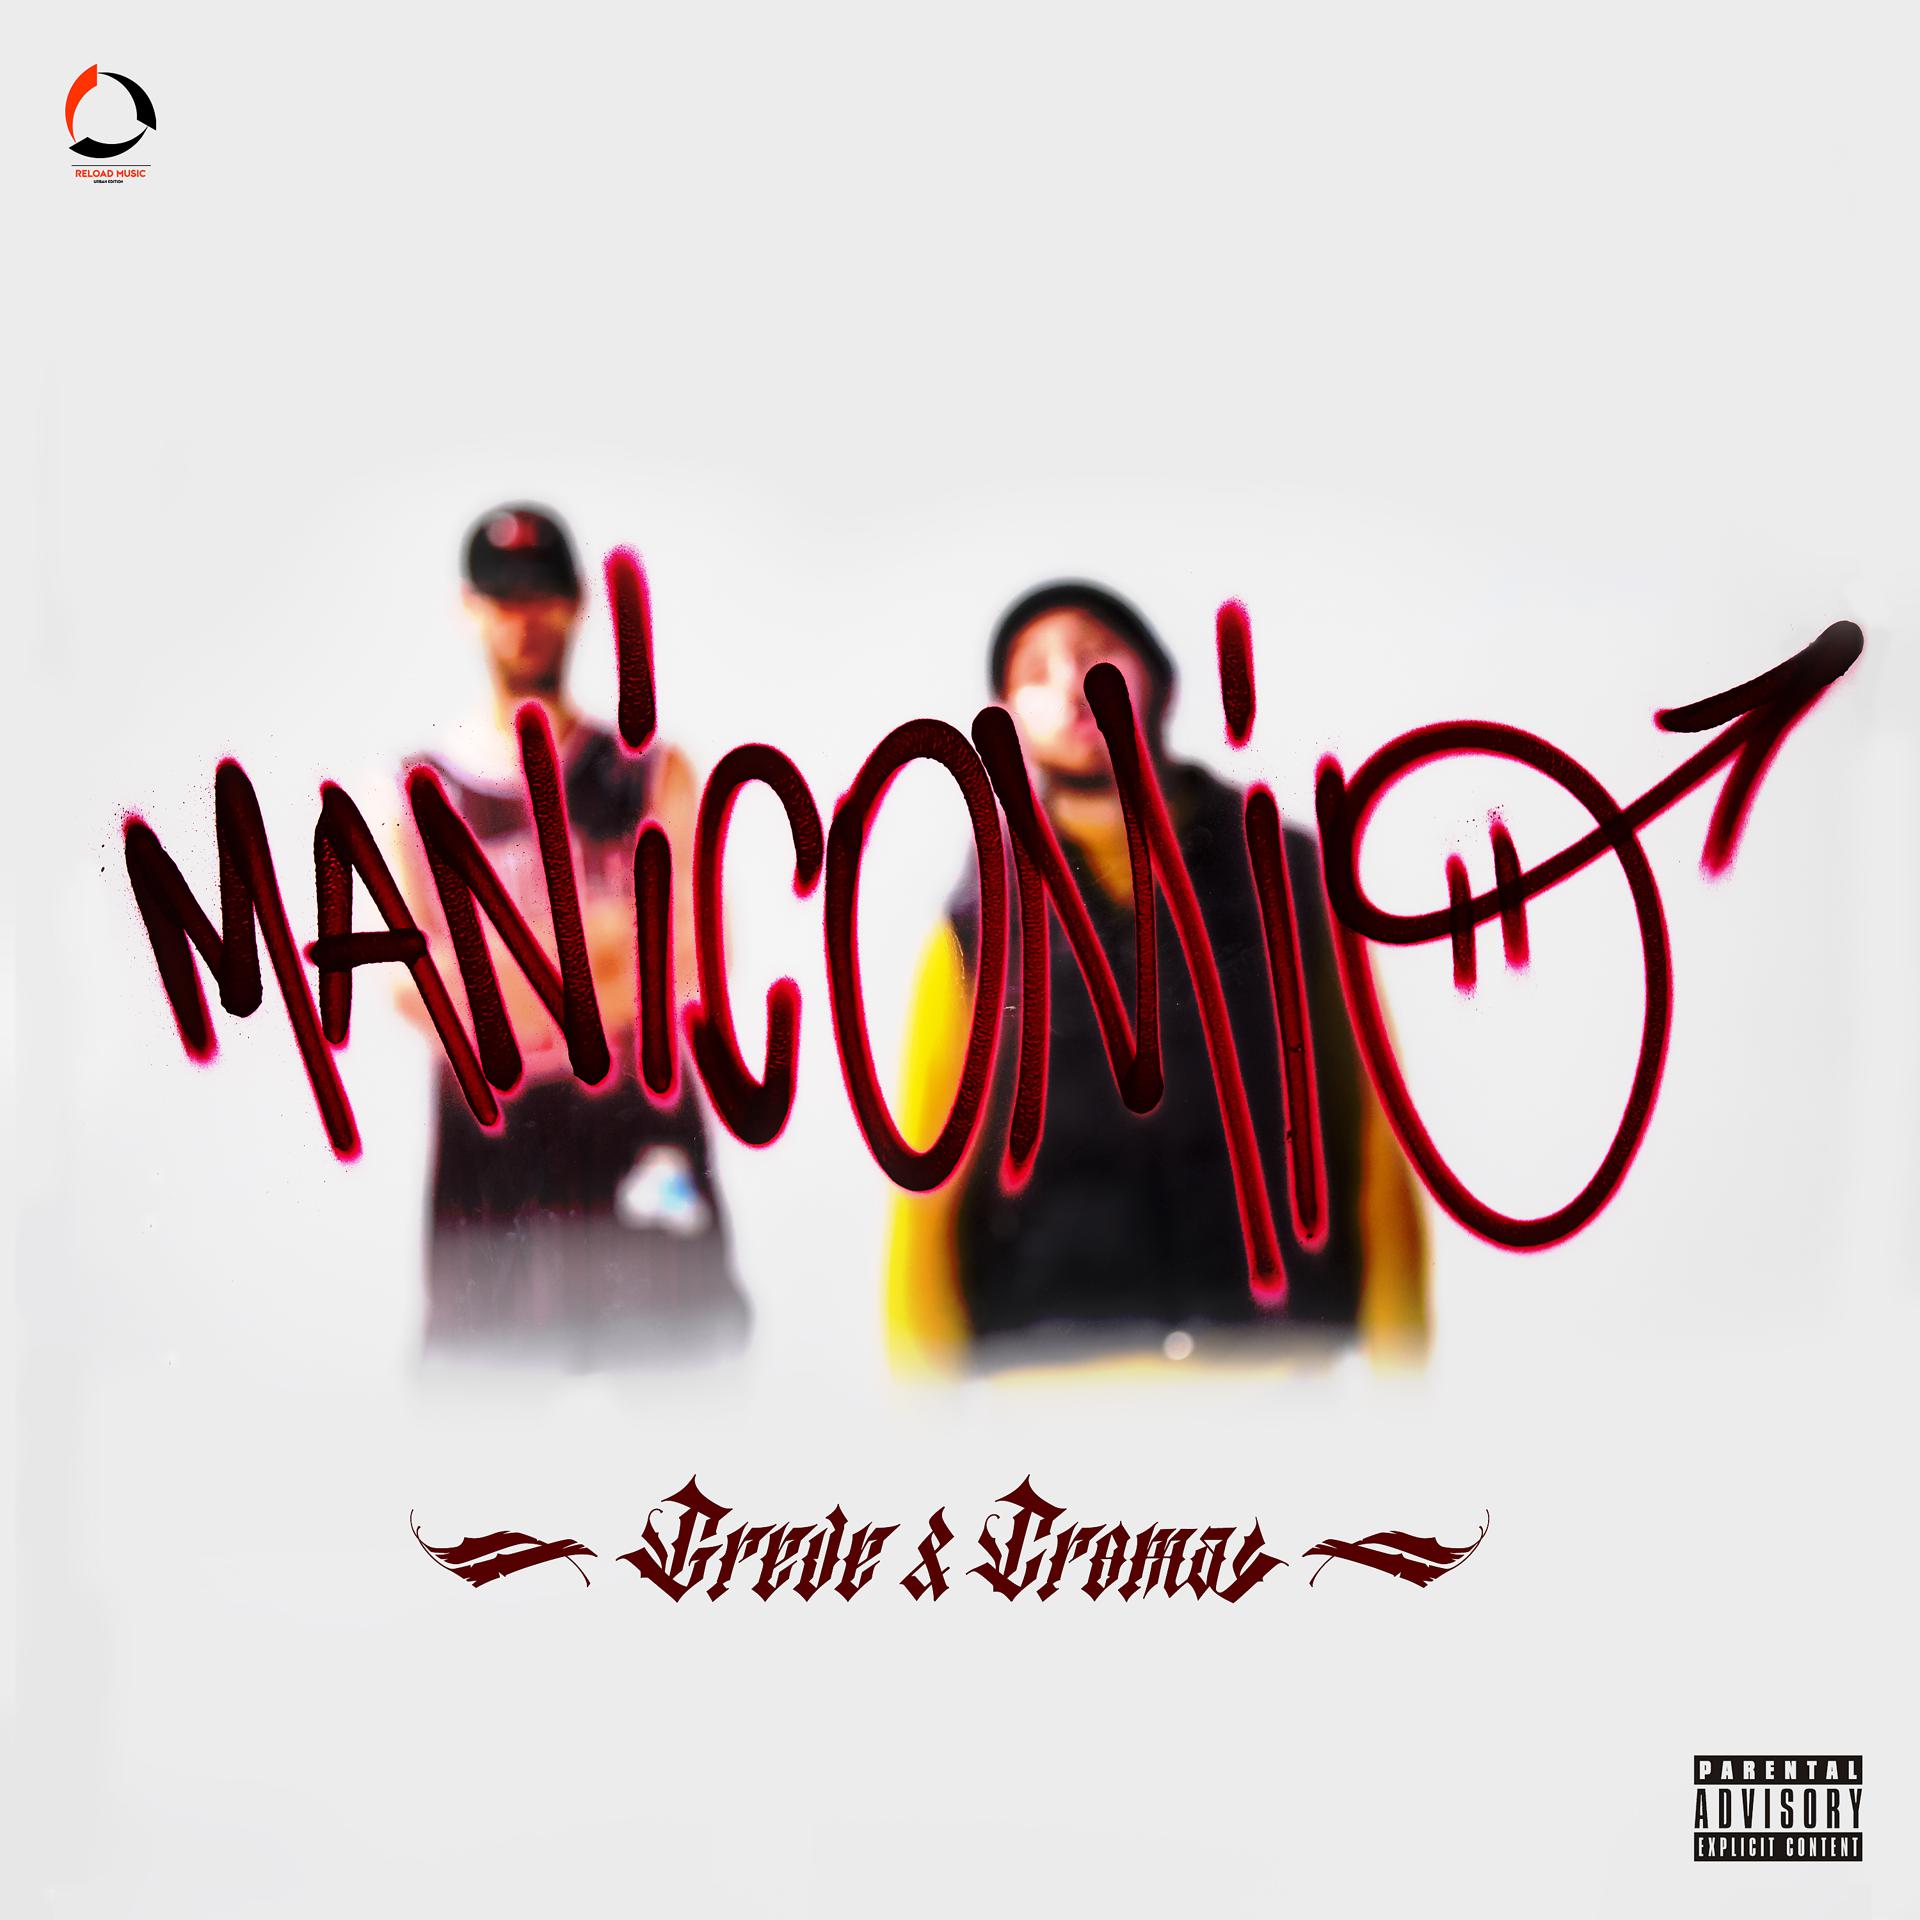 Постер альбома Manicomio